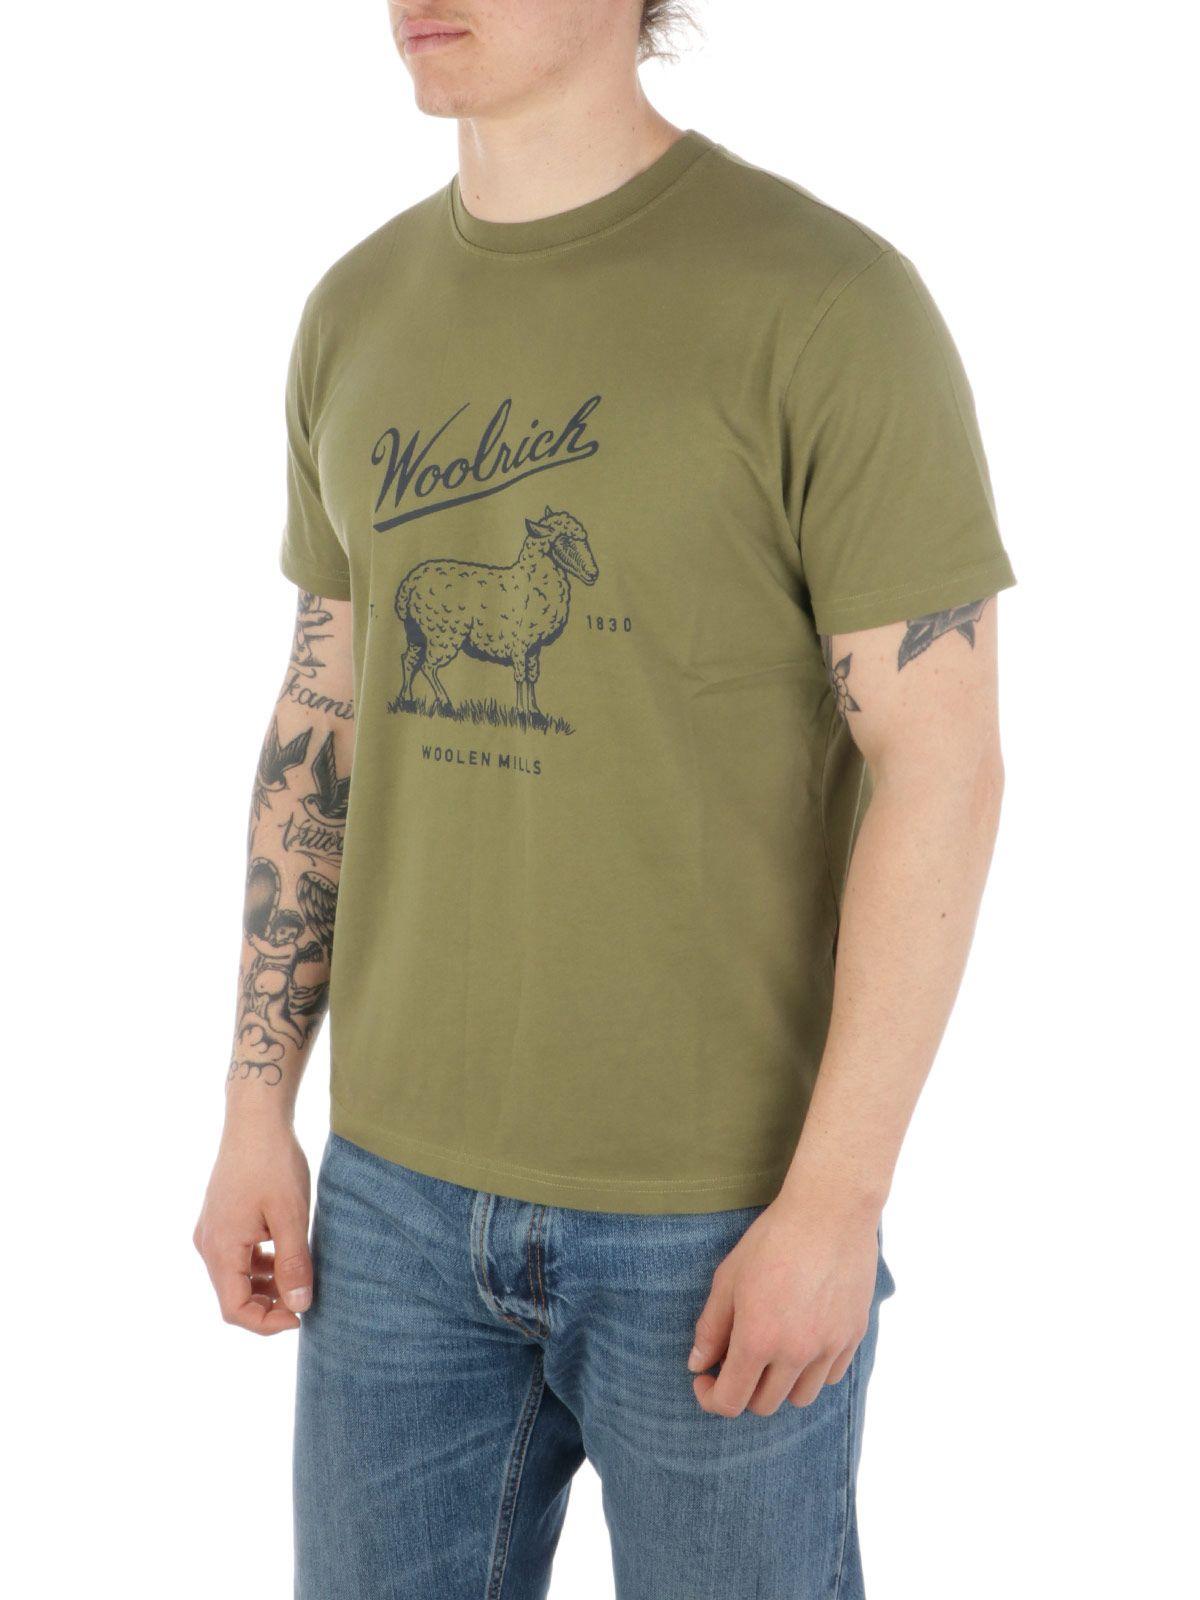 Woolrich Green T-shirt for Men | Lyst